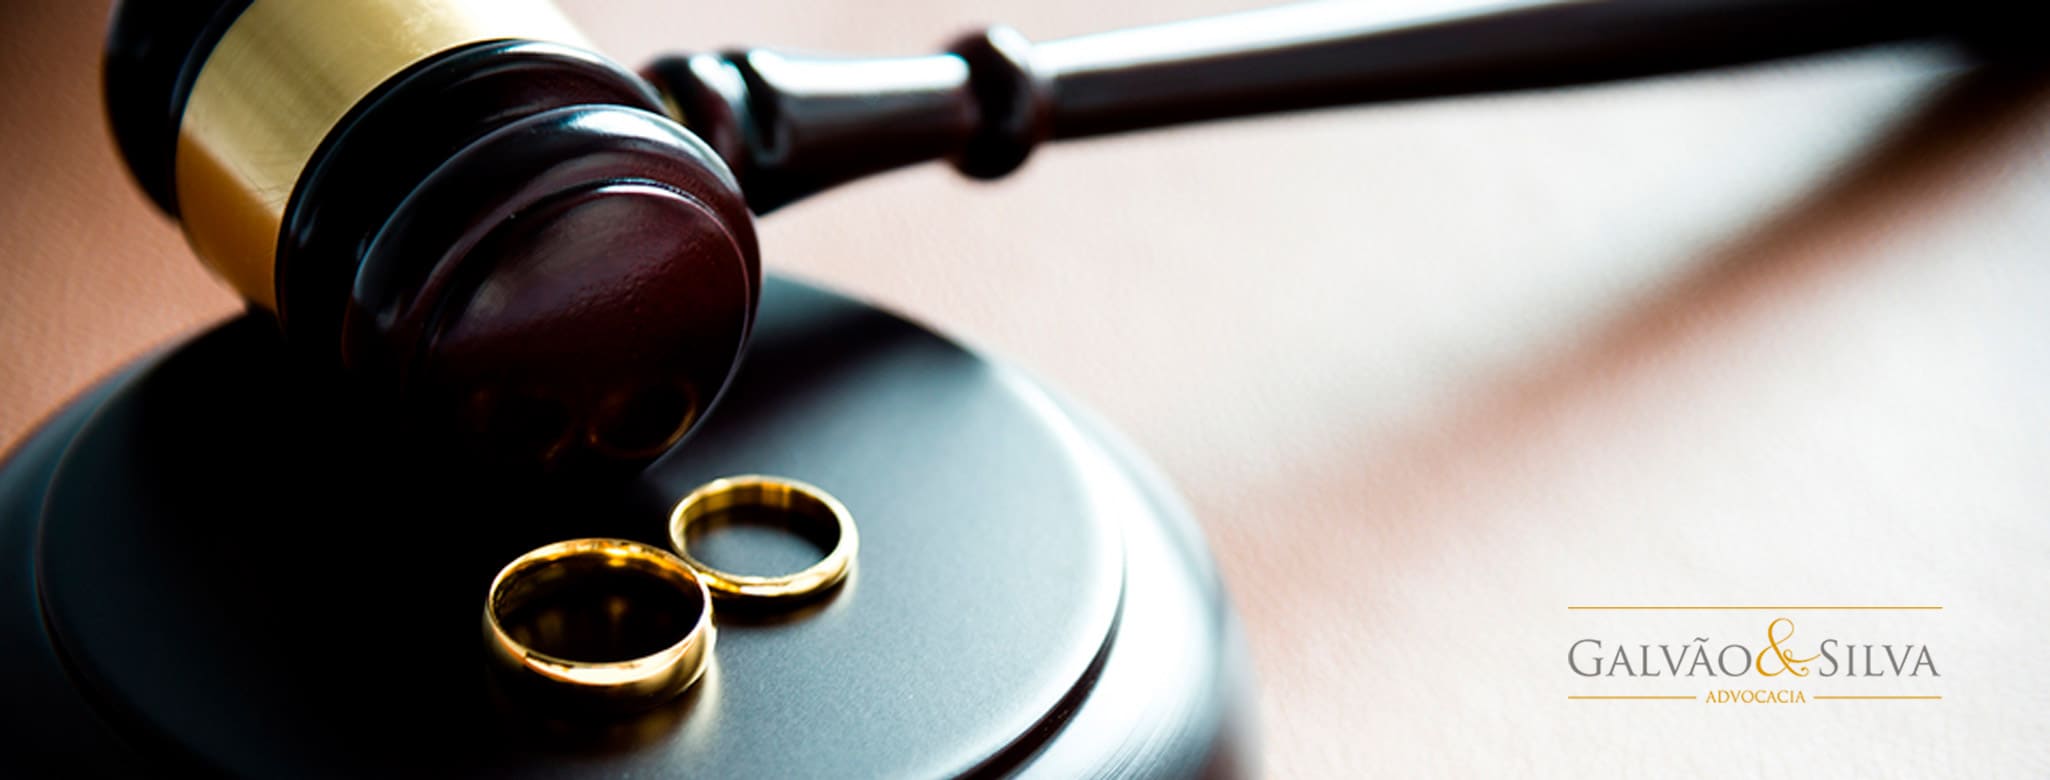 Divórcio litigioso, consensual e pensão alimentícia